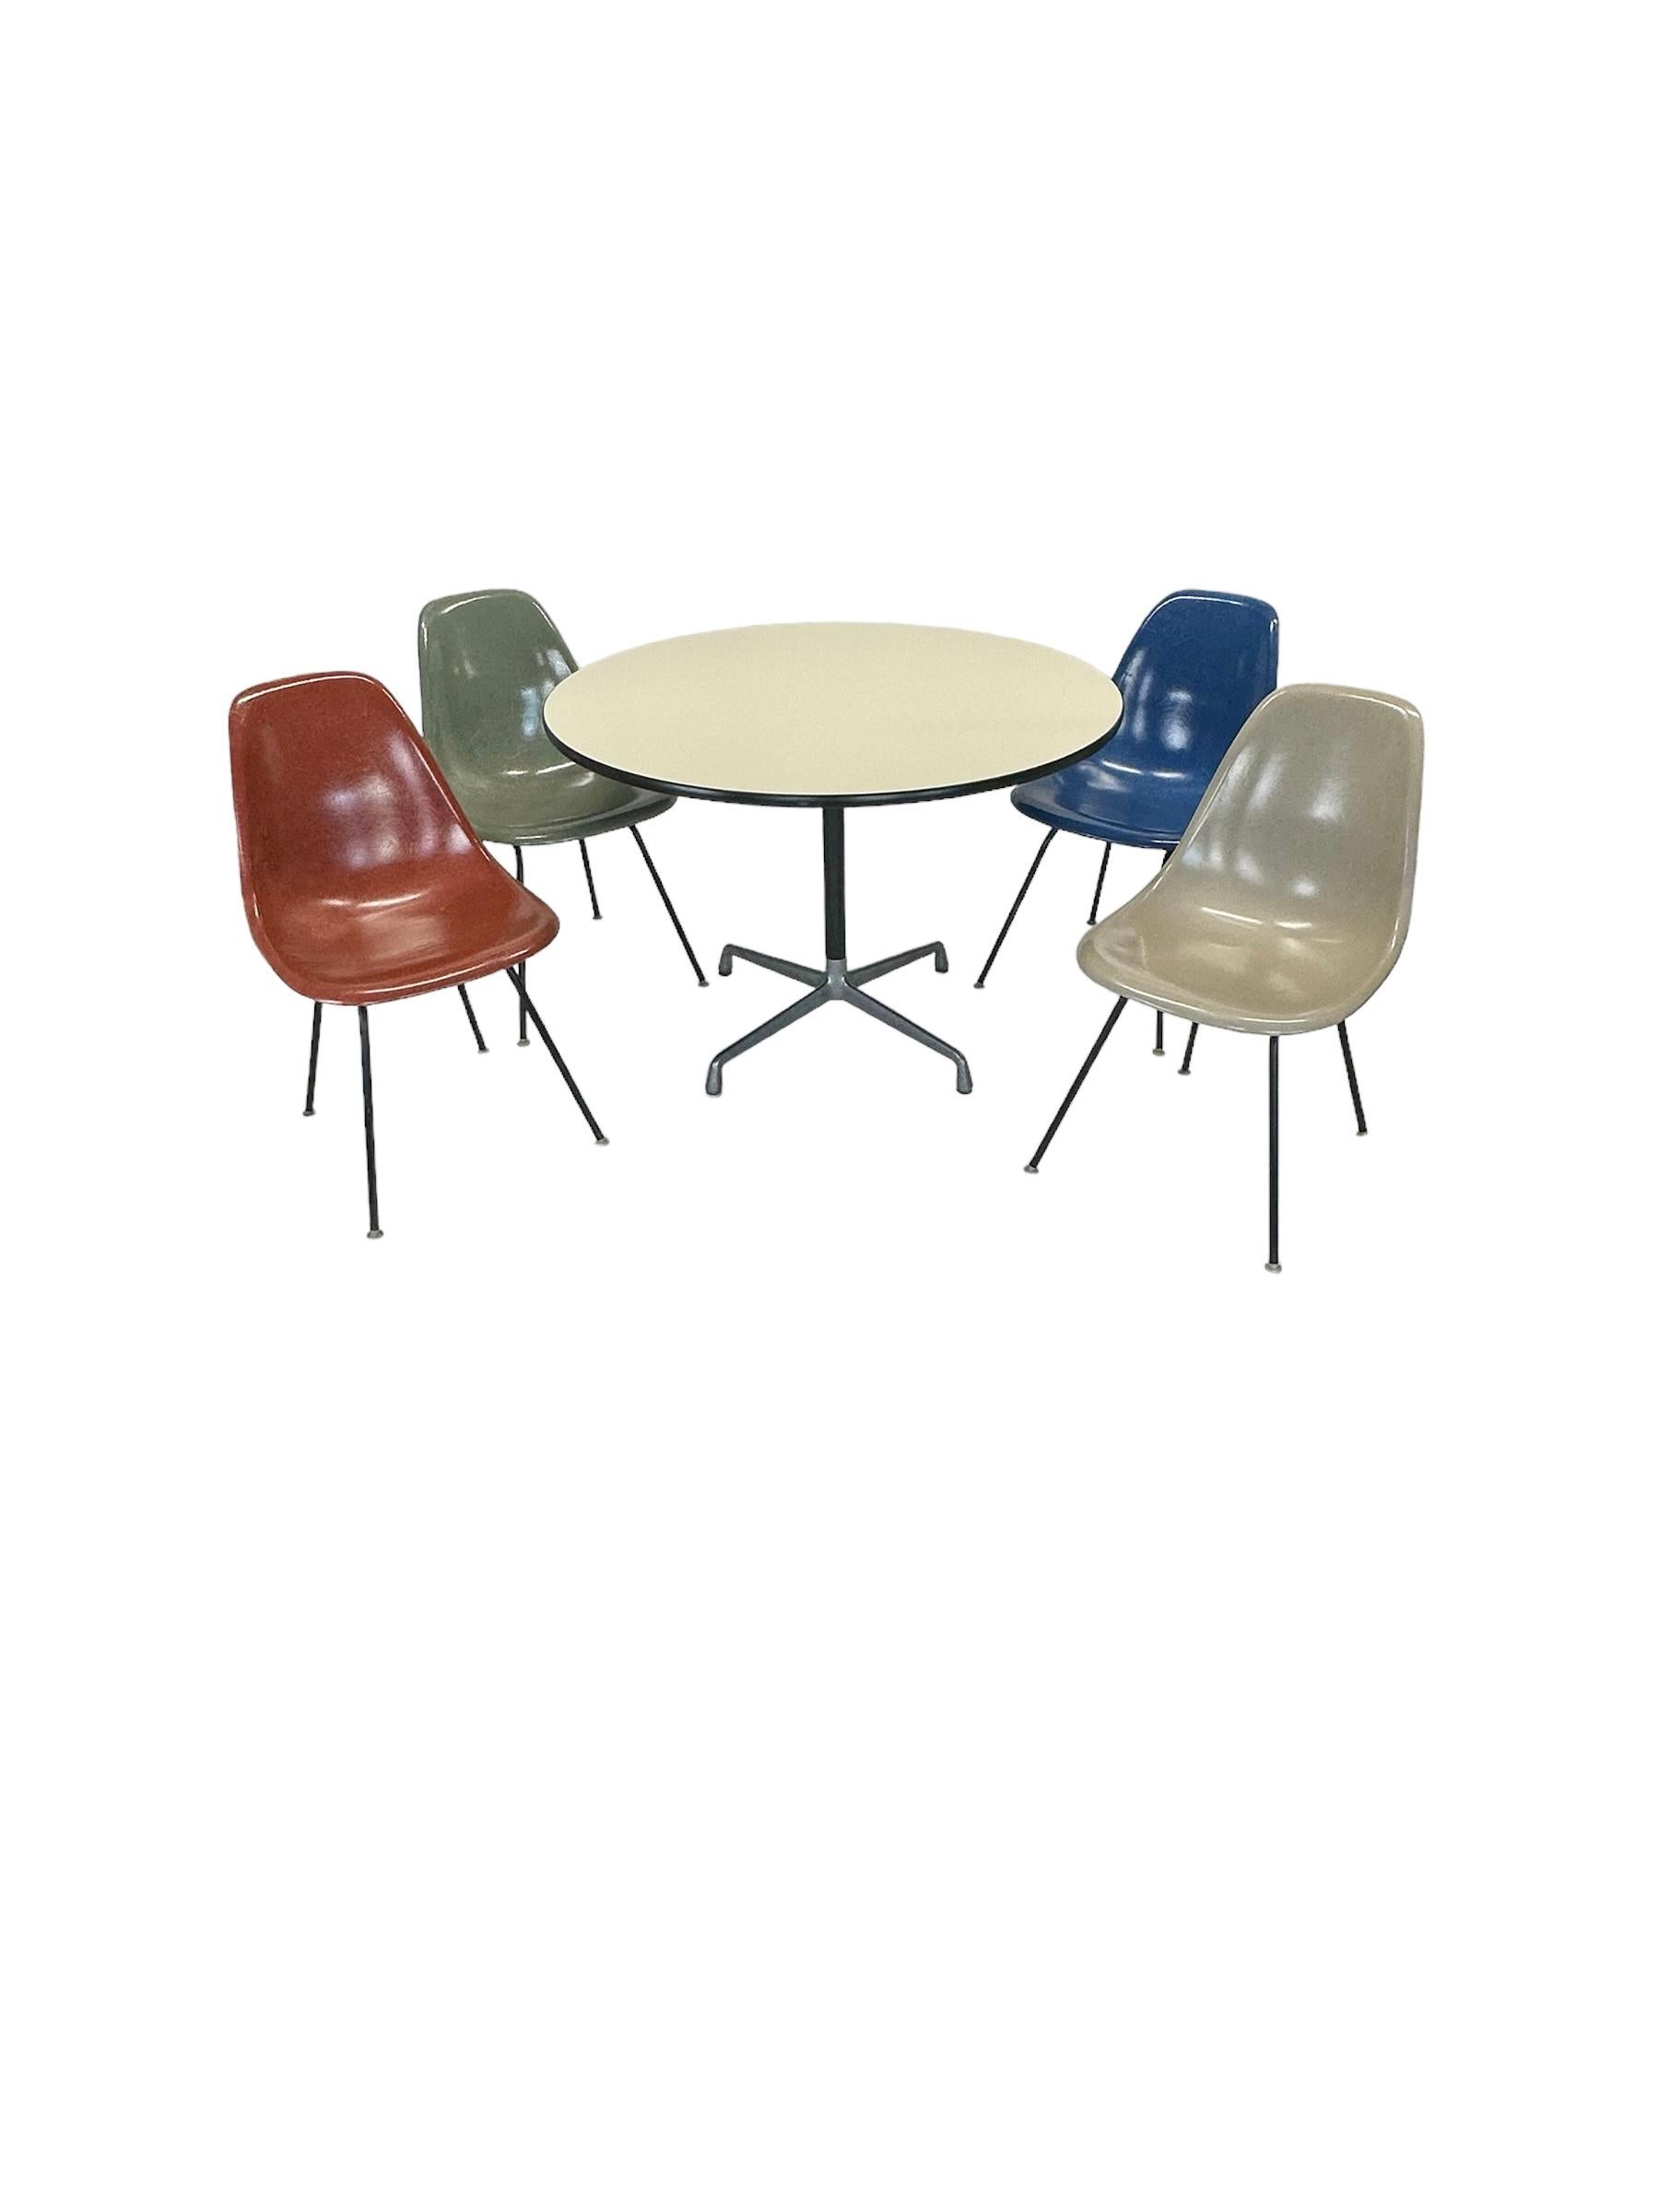 Ensemble de salle à manger original signé Herman Miller Eames. Chaises à coque multicolore sur base en H noire. Tous les patins de chaise autonivelants en nylon sont intacts, pour une utilisation sur de nombreux types de surfaces. Toutes les chaises